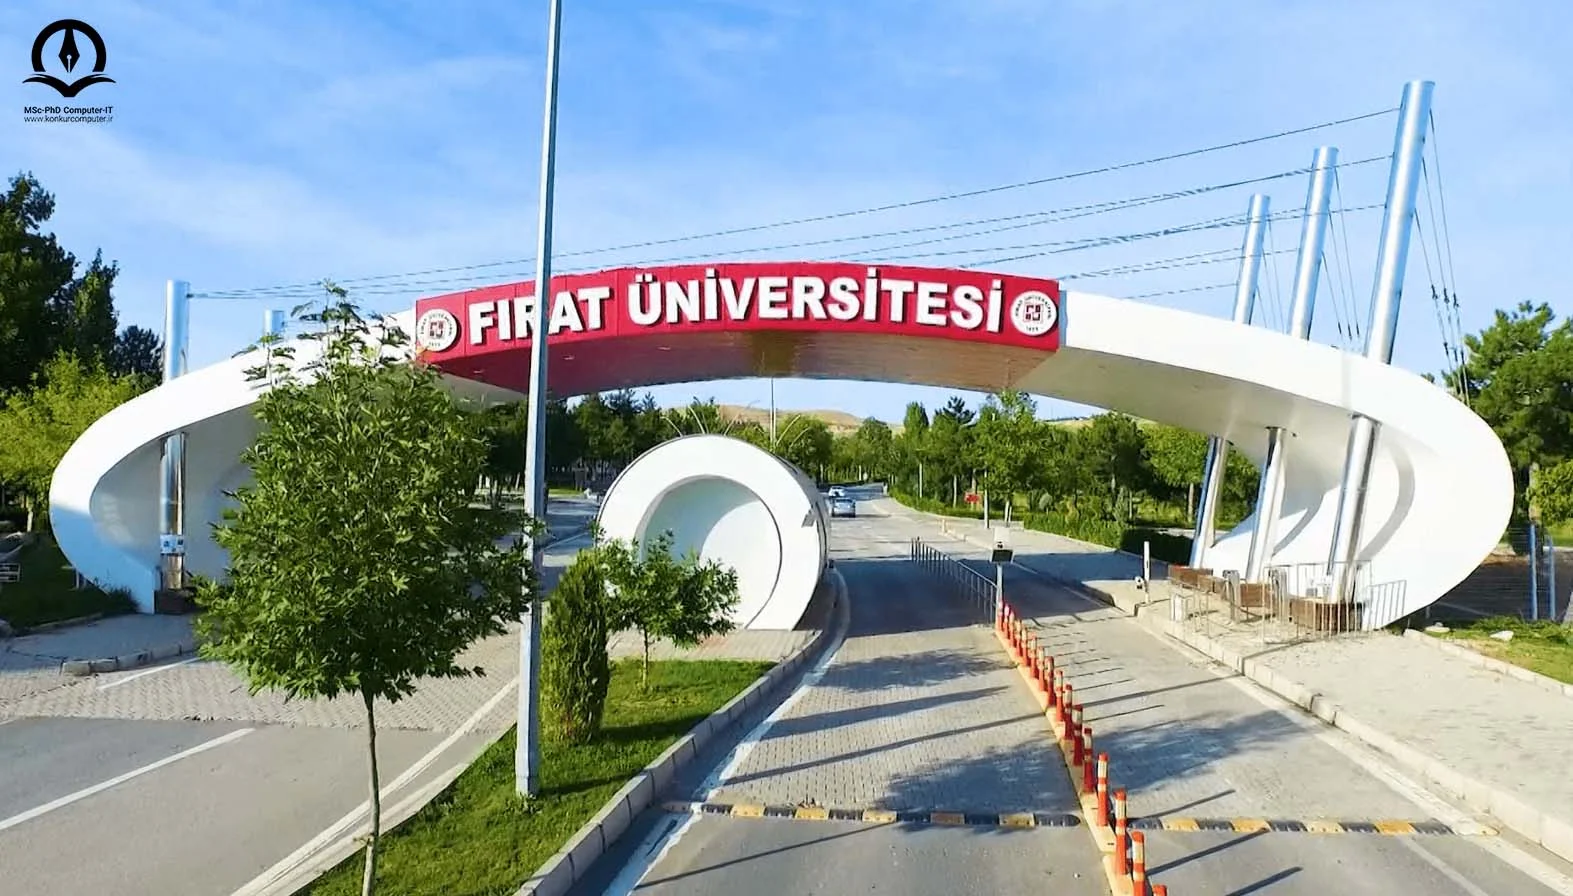 تصویری از دانشگاه فیرات در ترکیه